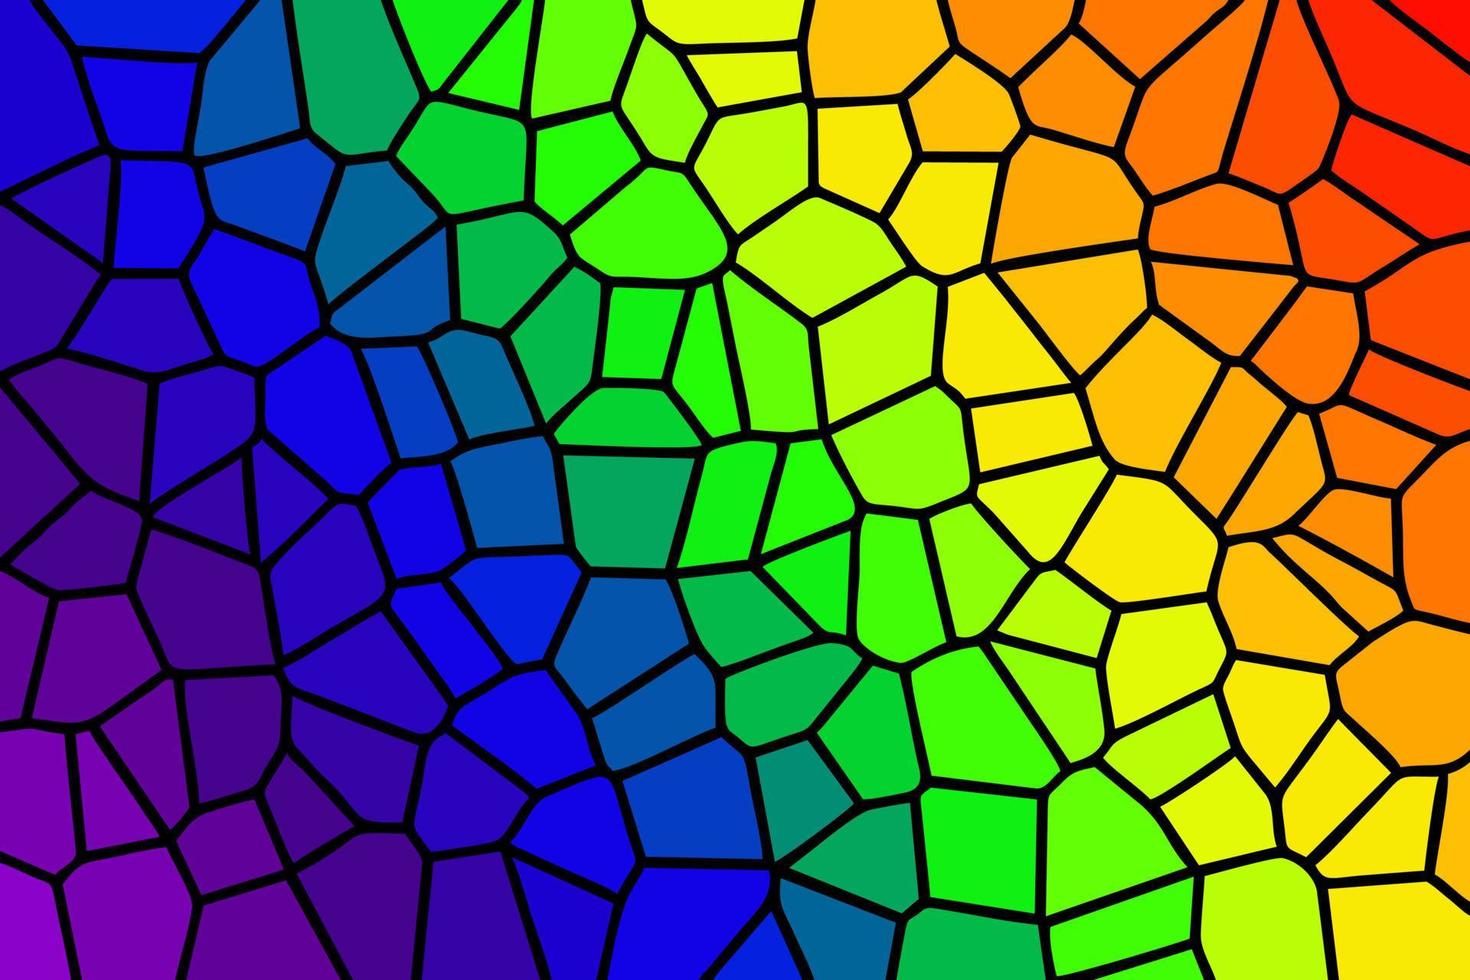 patrón de vidrieras de arco iris... vector